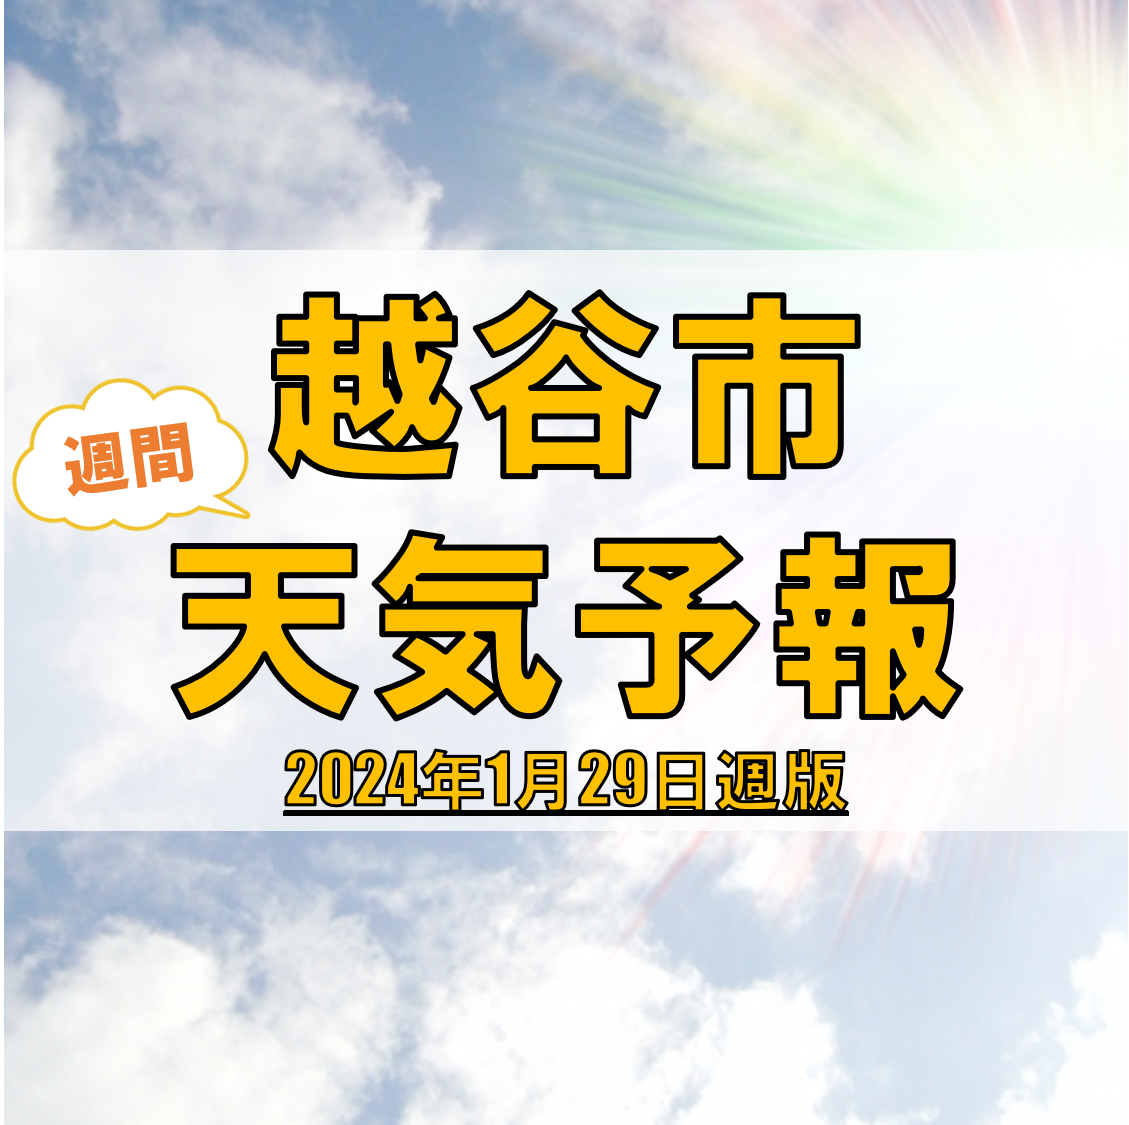 越谷市の天気 週間予報【2024年1月29日週】